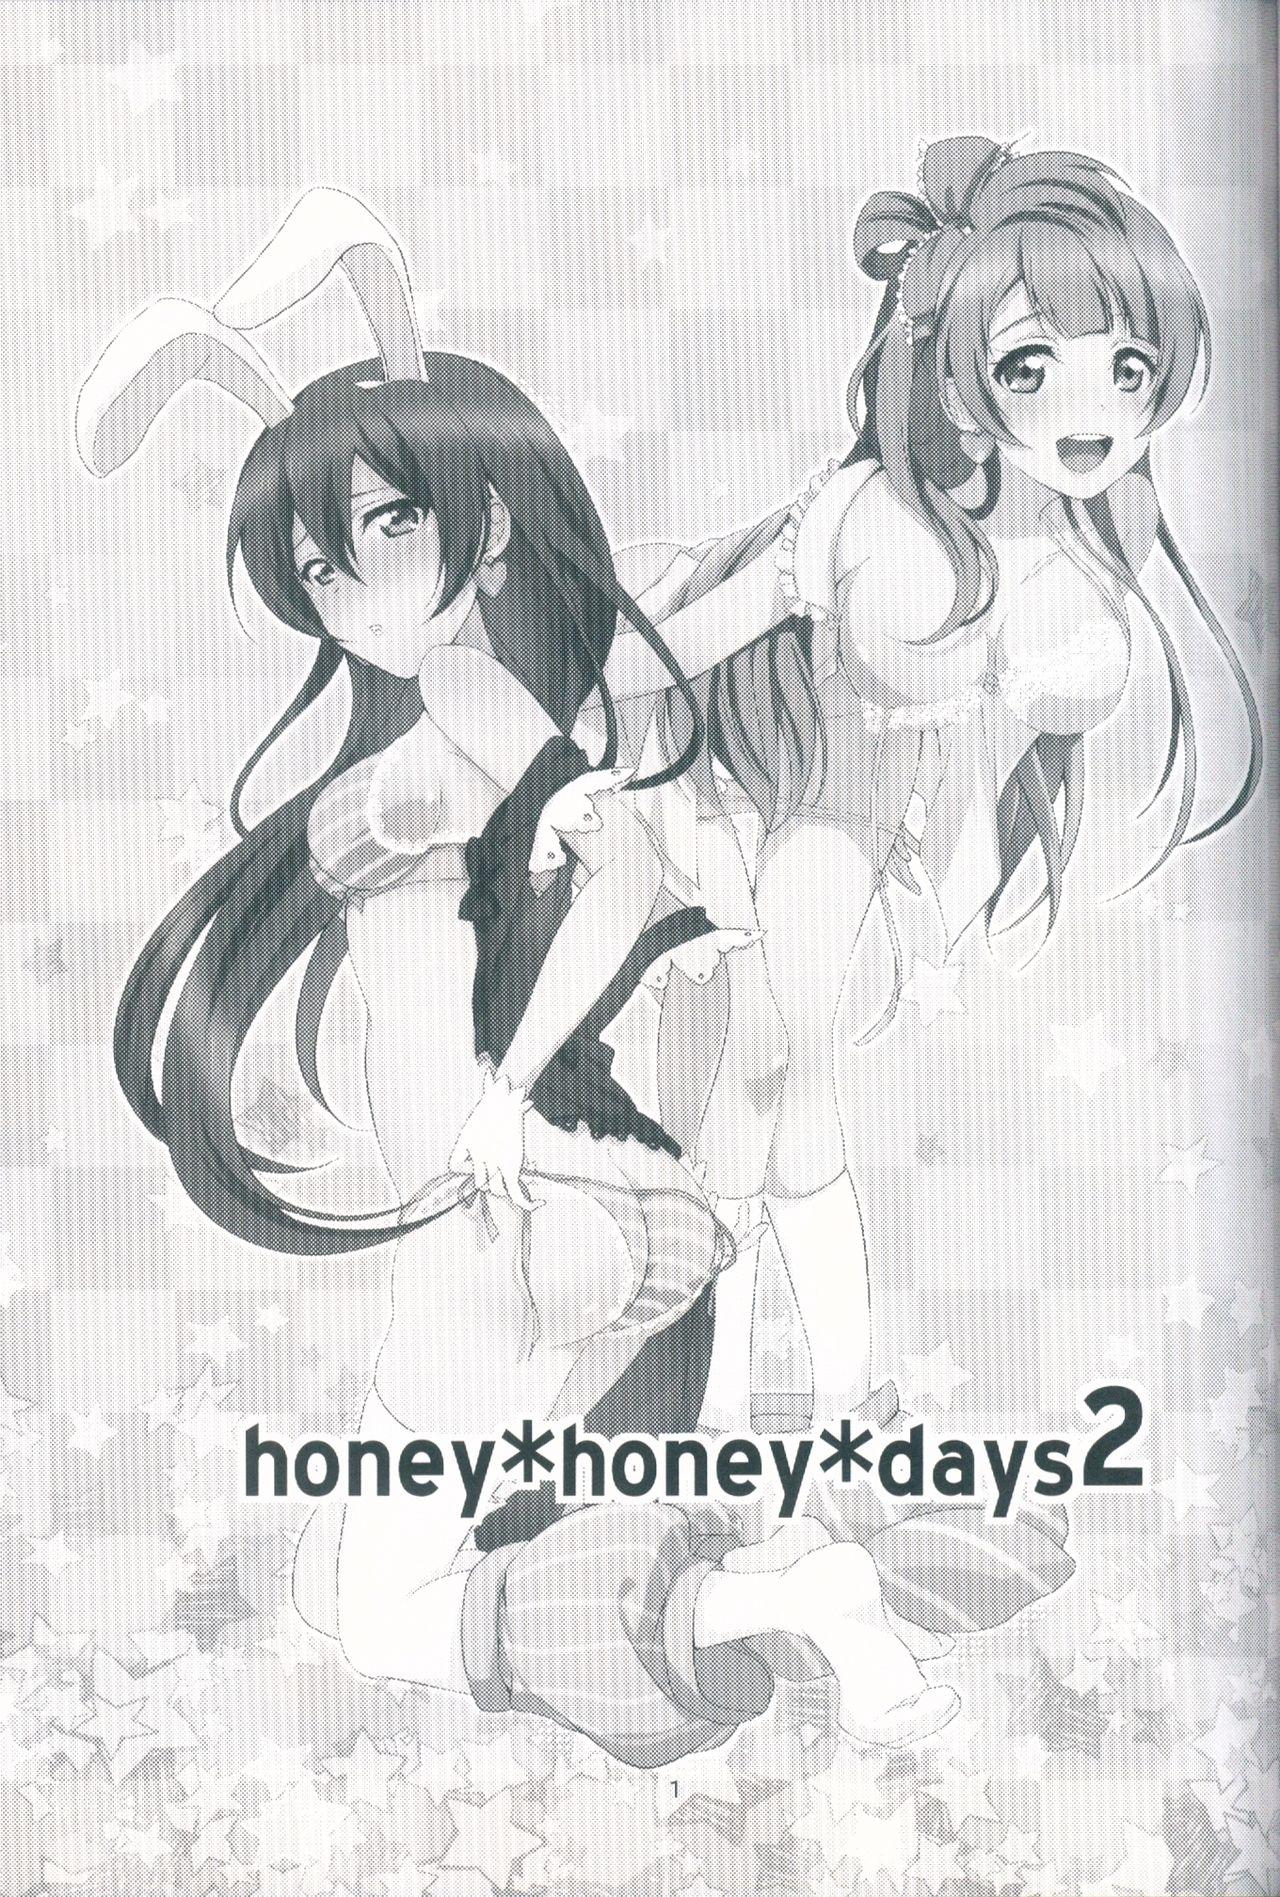 honey*honey*days2 2